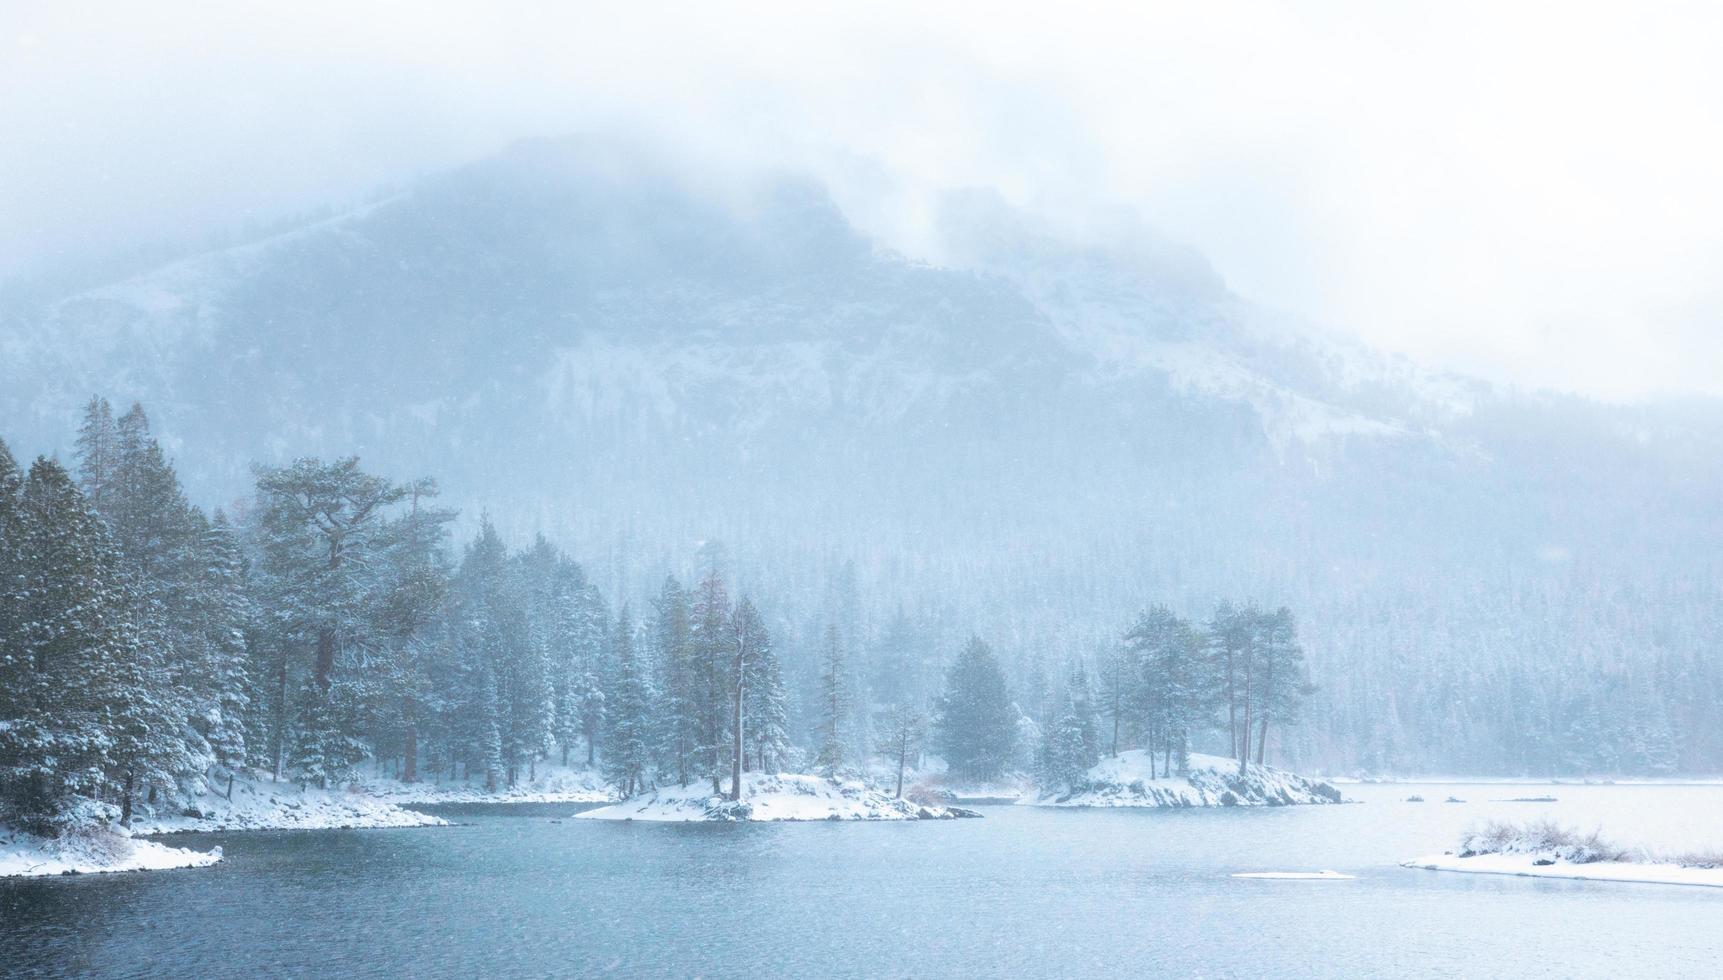 cette photo a été prise après qu'une tempête de neige a fait tomber de la belle neige sur un lac dans la forêt nationale de tahoe dans le nord de la californie.